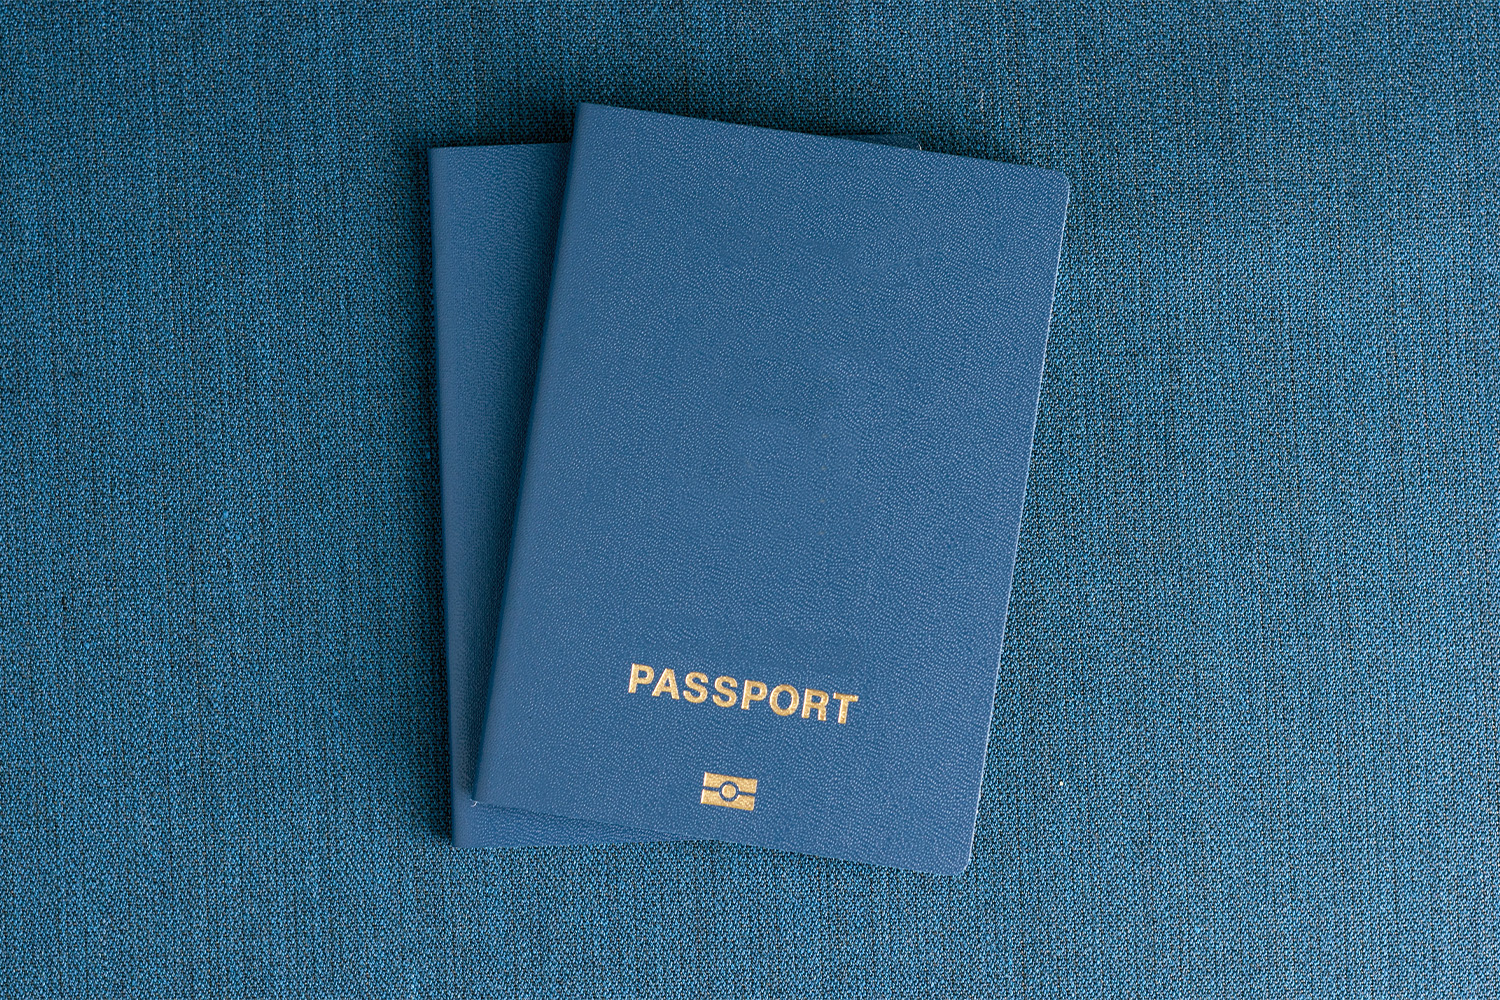 irish passport emergency travel document